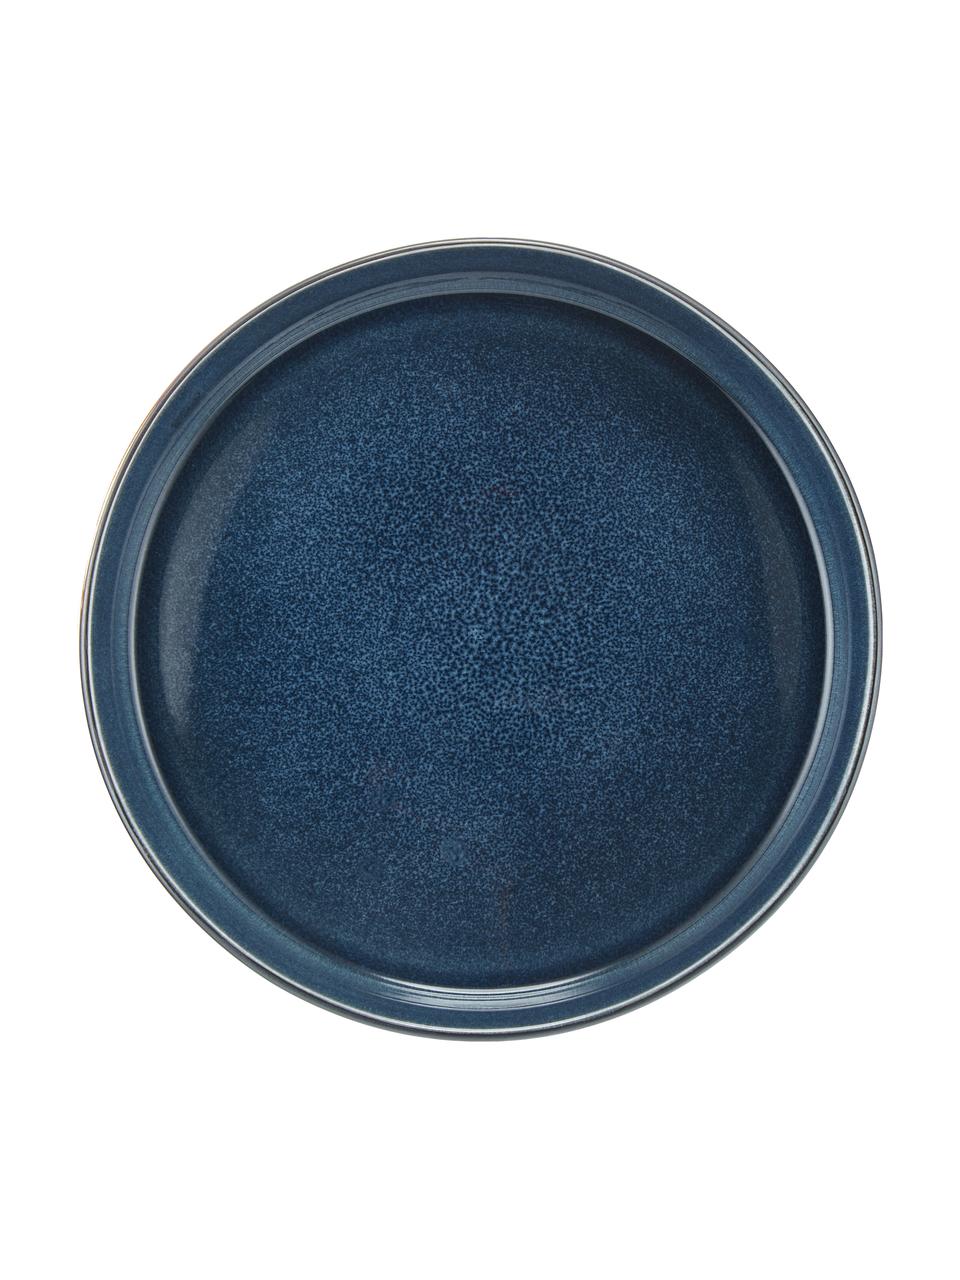 Hluboký talíř s barevným přechodem Quintana, 2 ks, Modrá, hnědá